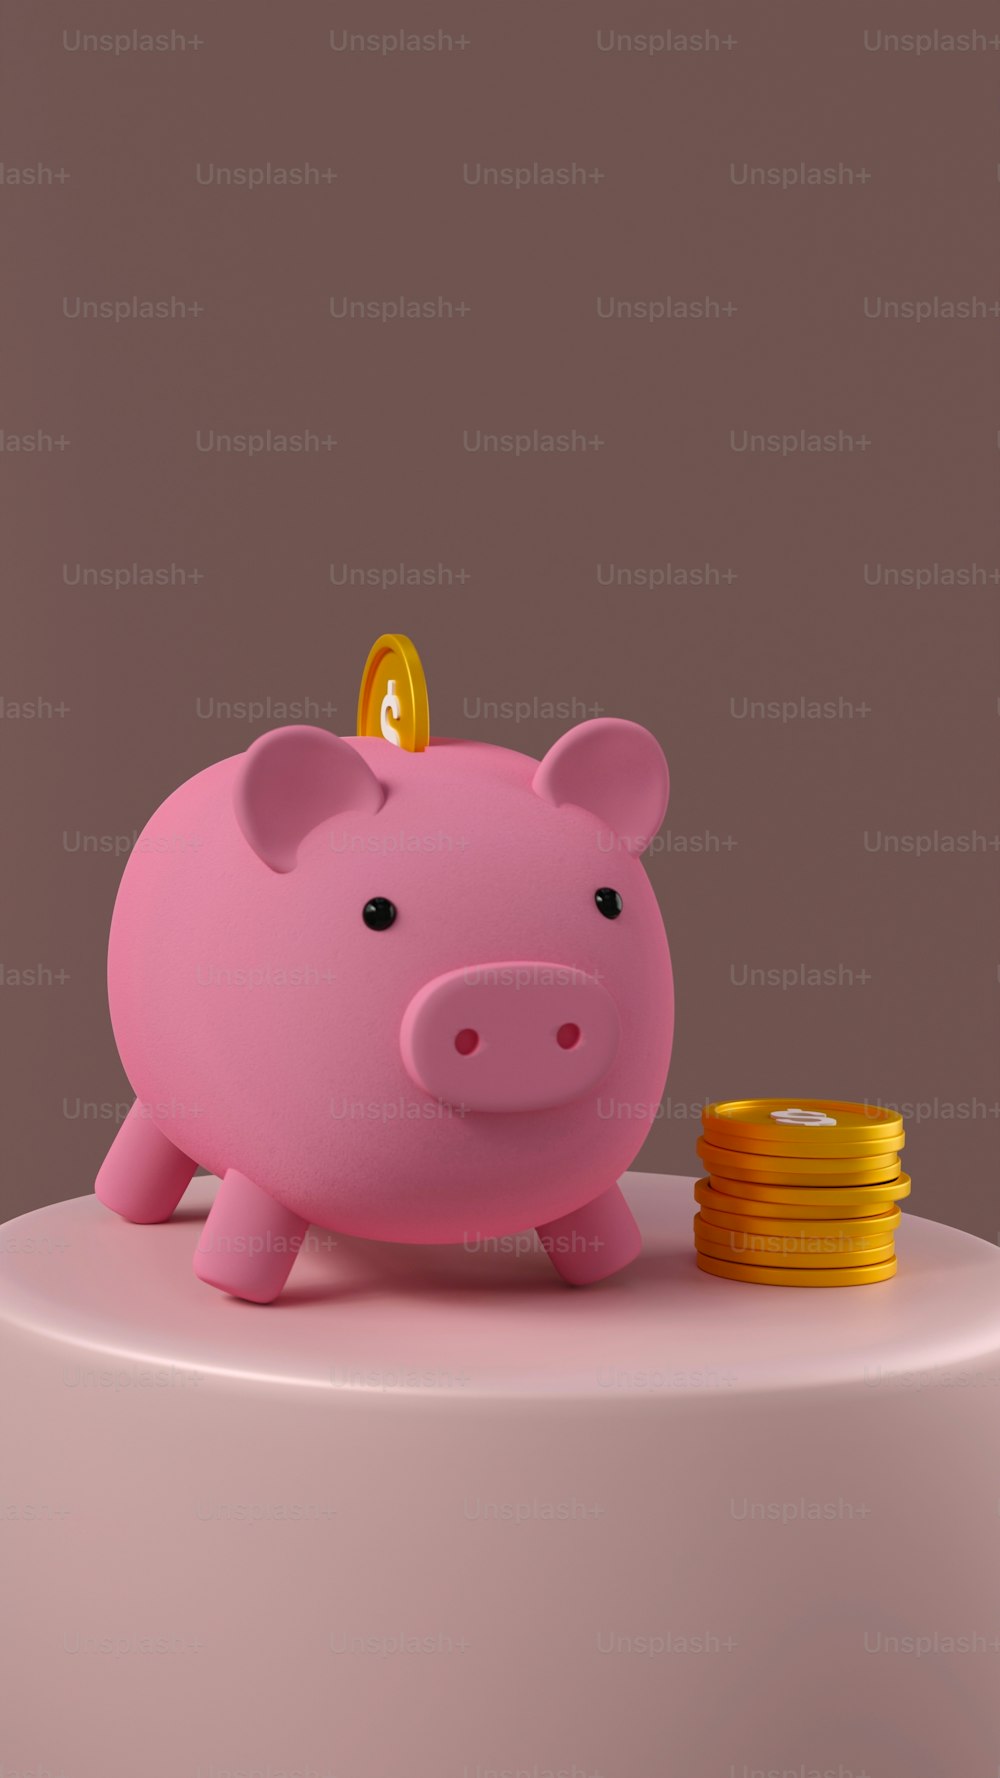 Un salvadanaio rosa seduto in cima a una pila di monete d'oro